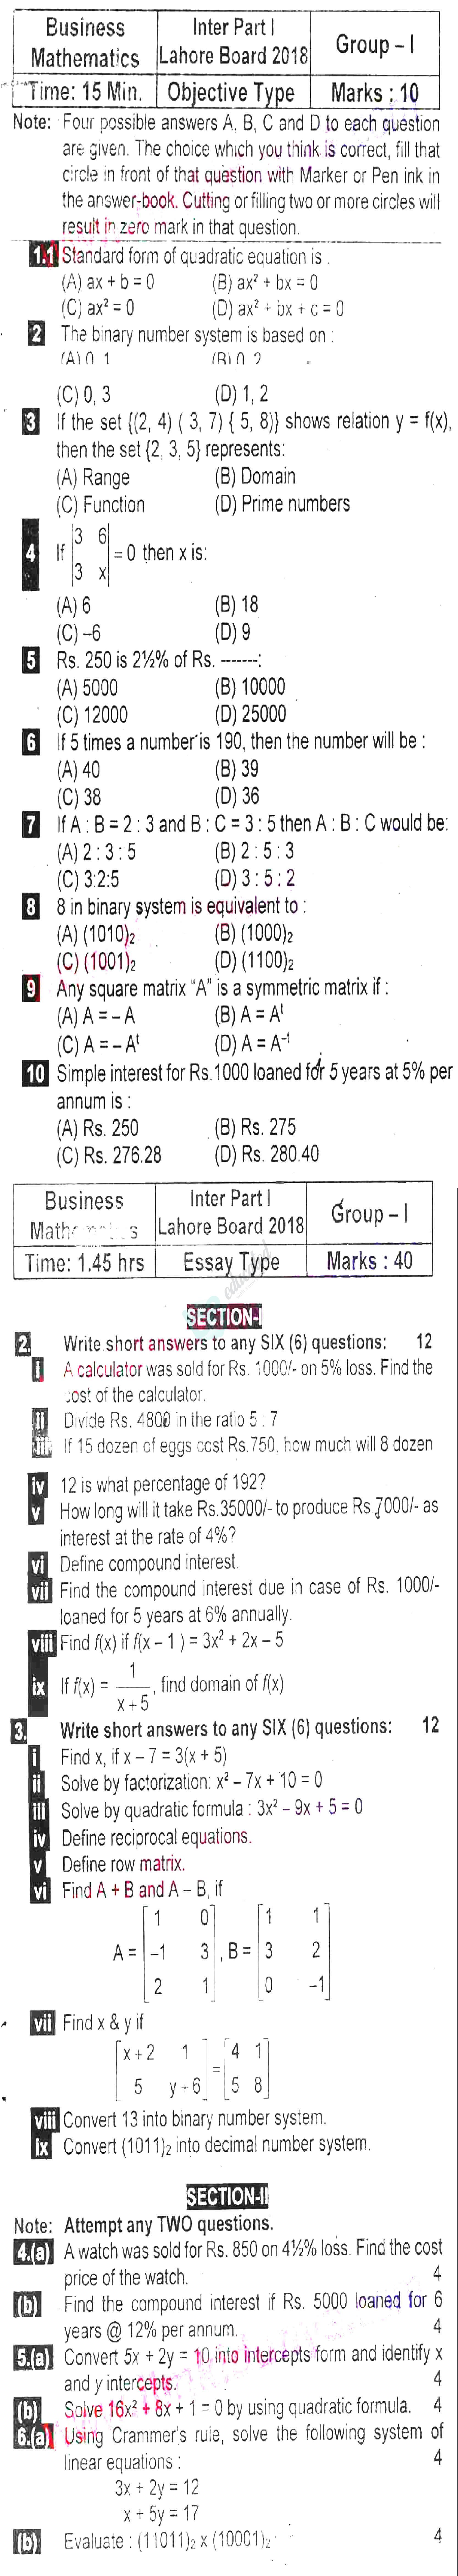 Business Mathematics ICOM Part 1 Past Paper Group 1 BISE Lahore 2018